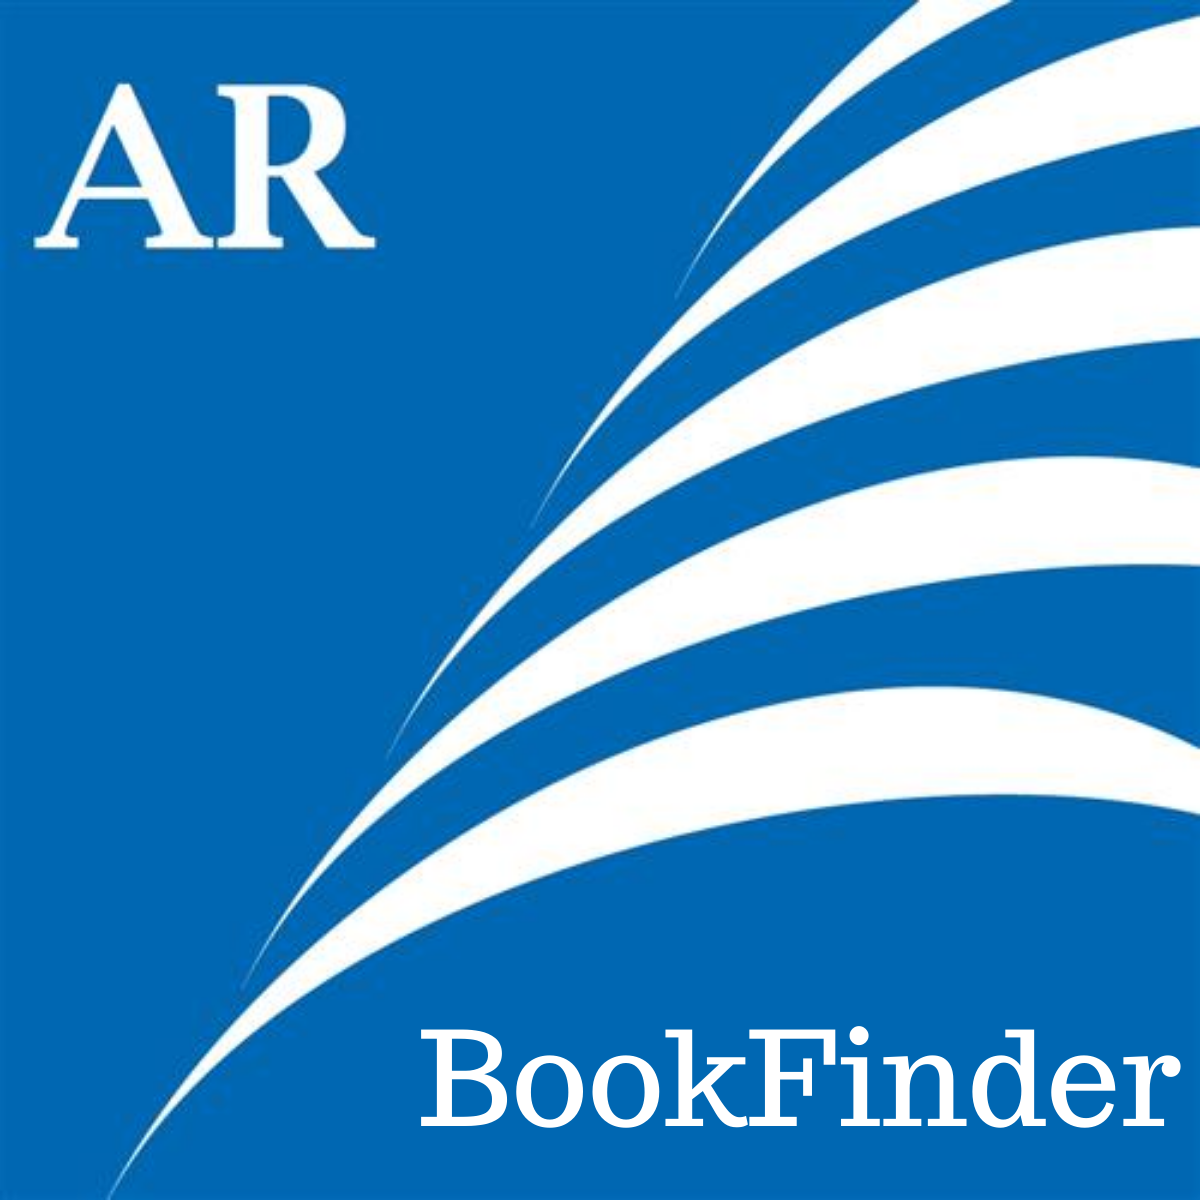 AR Bookfind